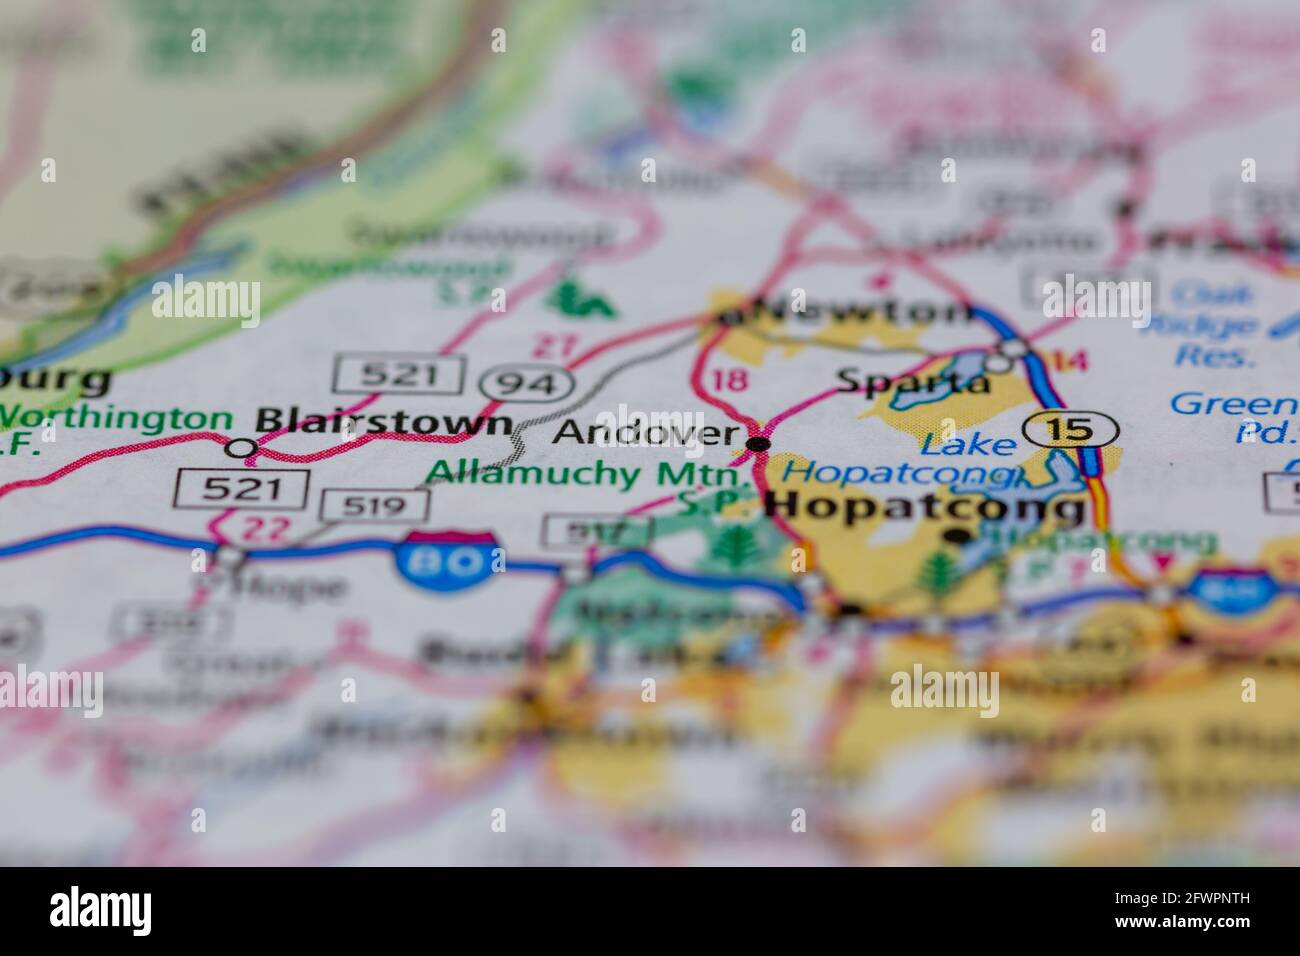 Andover New Jersey USA montré sur une carte de géographie ou carte routière Banque D'Images